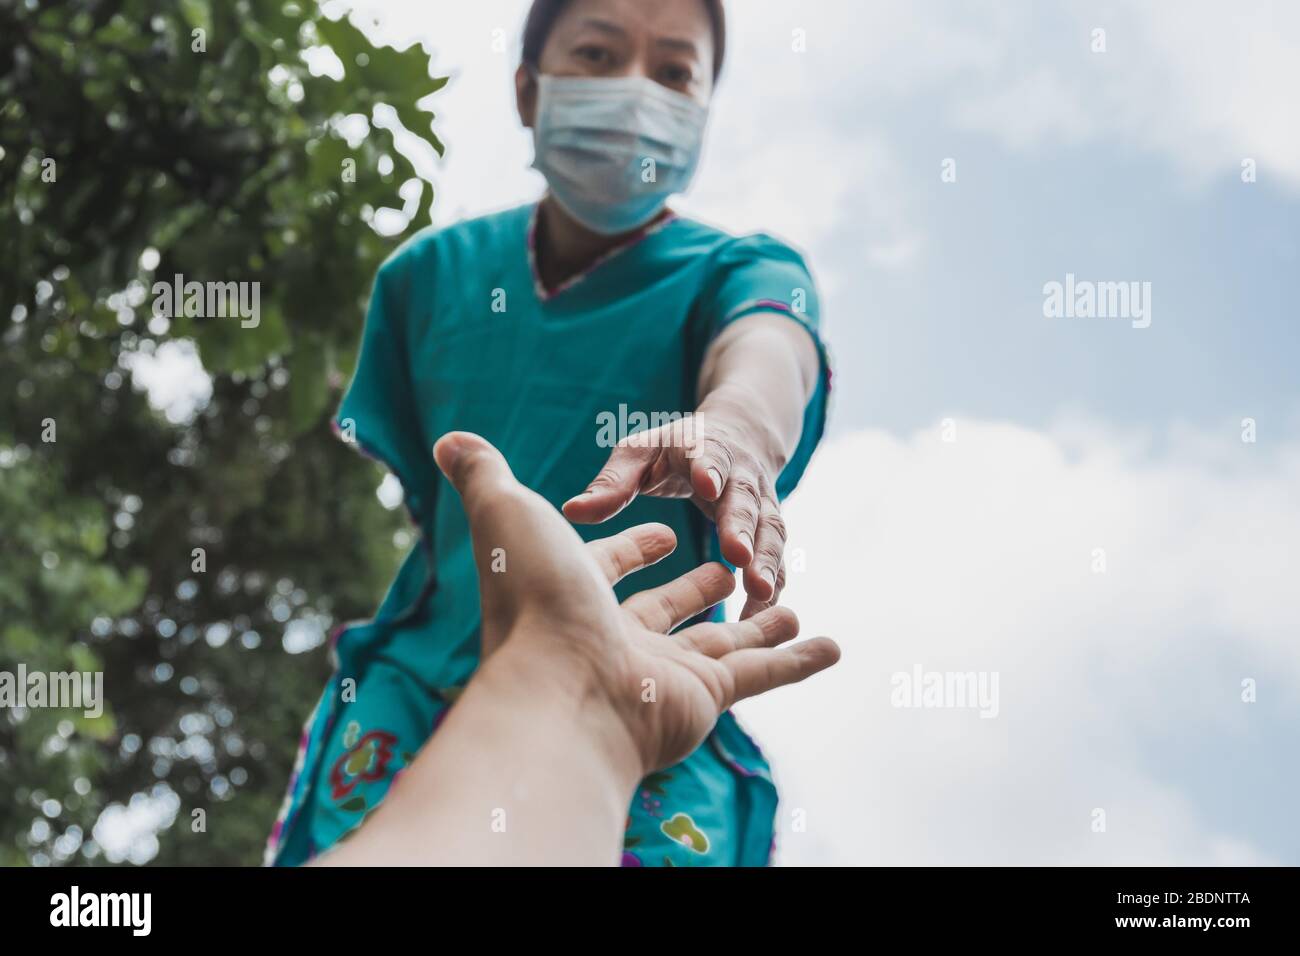 Hände von Menschen in medizinischen Handschuhen, die sich für das Hope COVID-19-Konzept ausstreten. Stockfoto